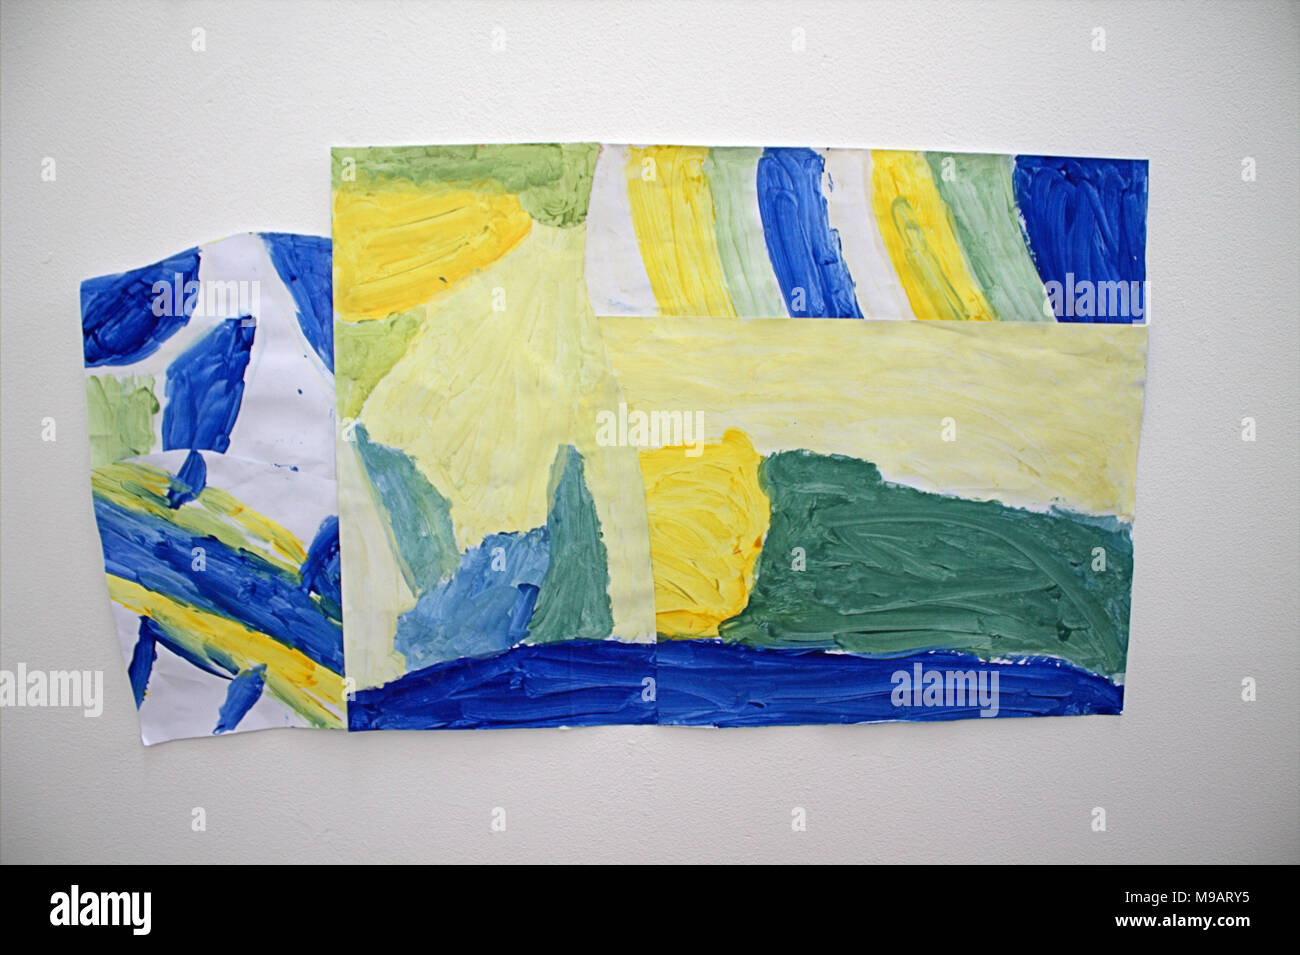 Kinder abstrakte Kunst, Malerei auf Anzeige in der uillinn Art Gallery, skibbereen, West Cork, Irland. Bilder mit der Galerie Erlaubnis übernommen. Stockfoto